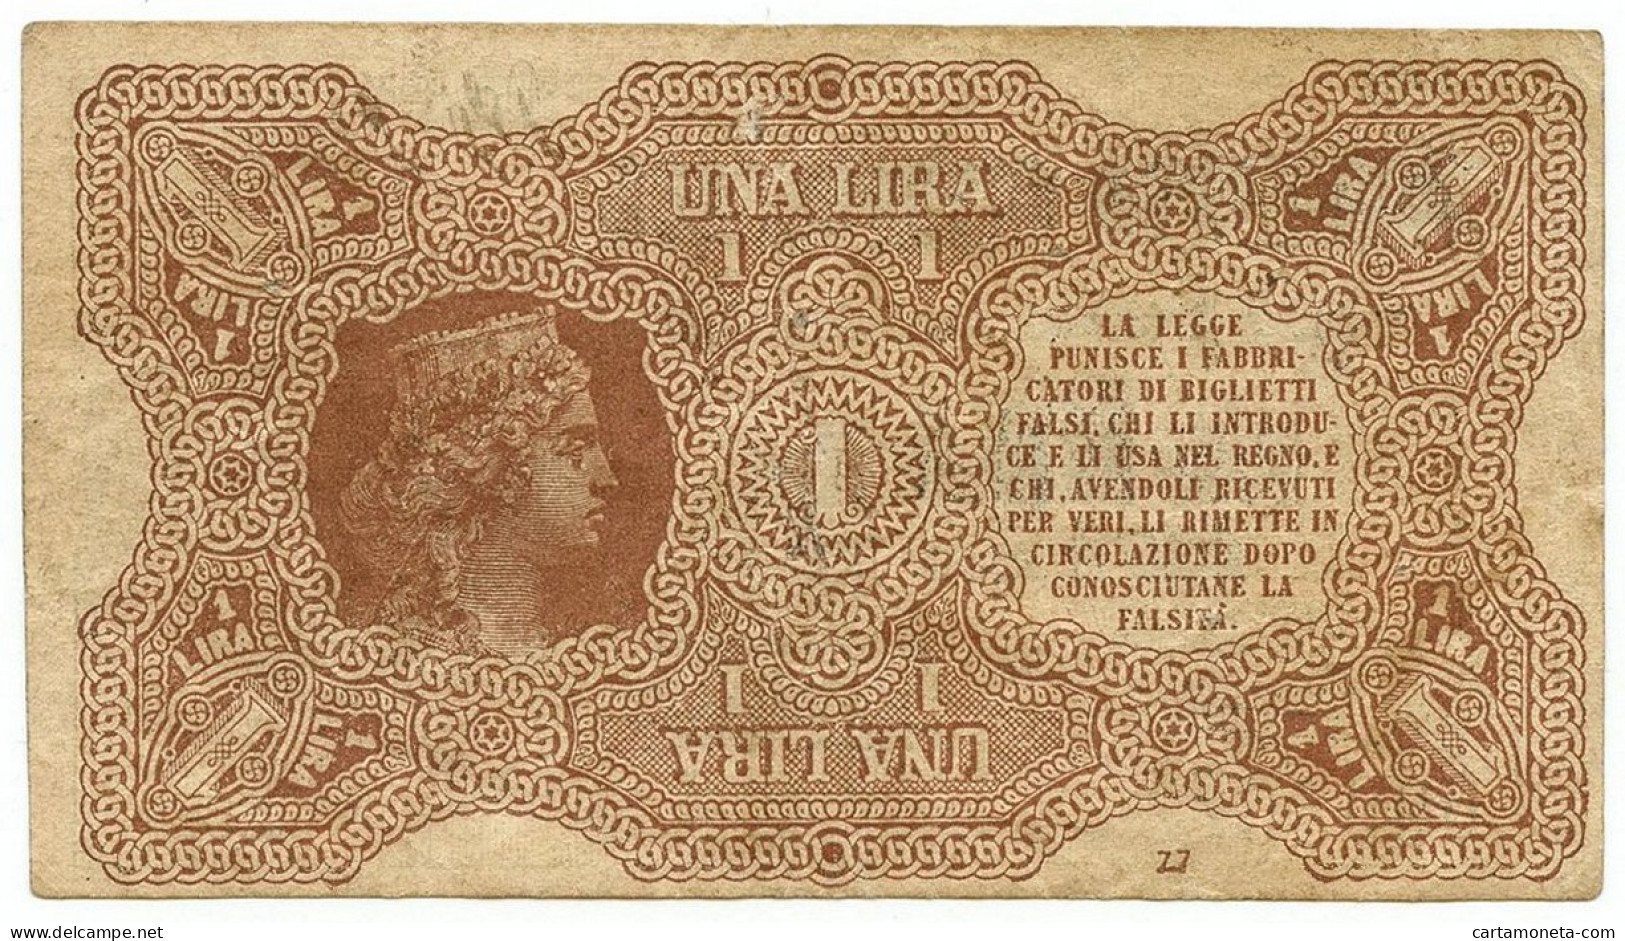 1 LIRA BIGLIETTO CONSORZIALE REGNO D'ITALIA 30/04/1874 BB - Biglietti Consorziale